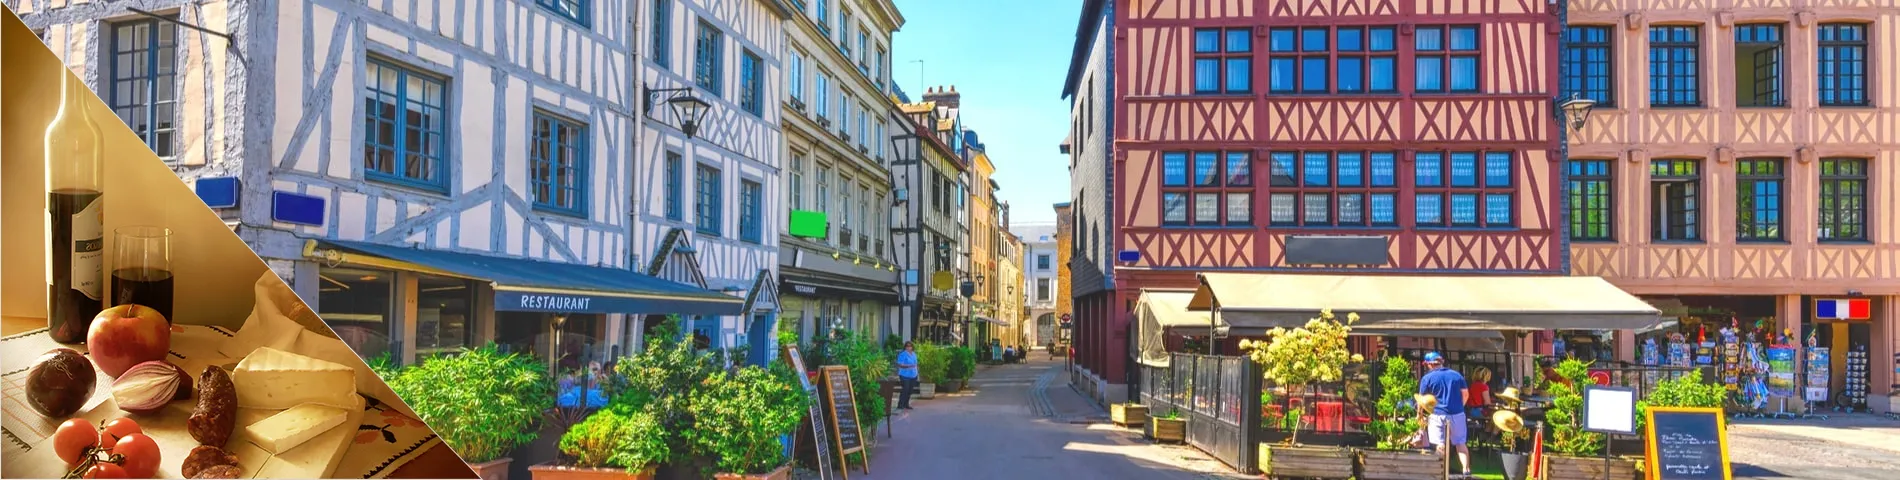 Rouen - Francúzština a kultúra